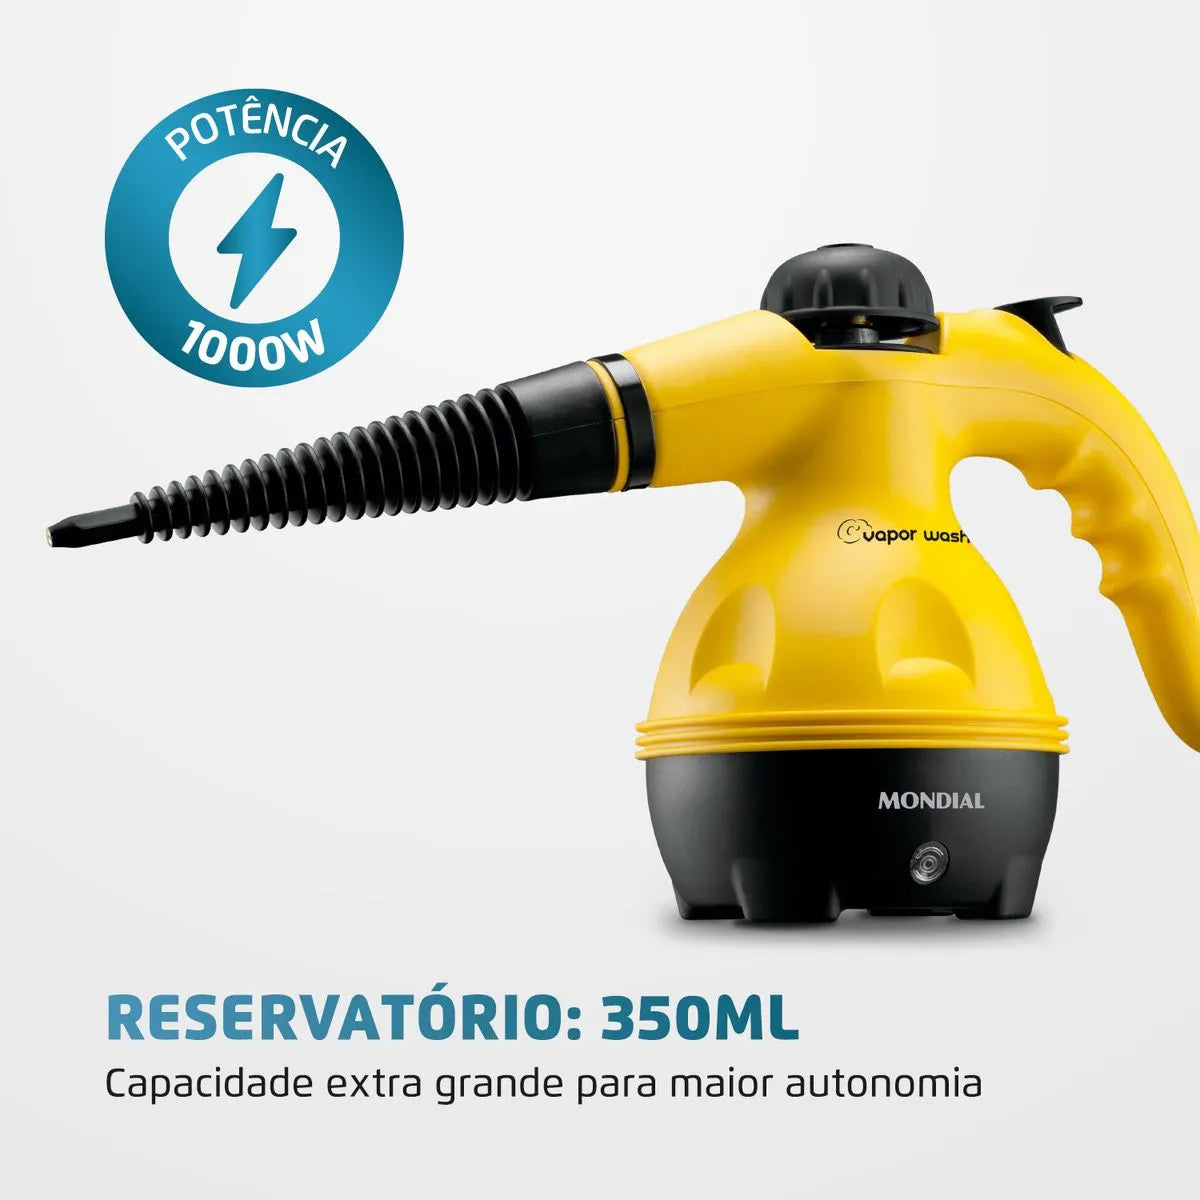 Higienizador Mondial Vapor Wash - 1000w